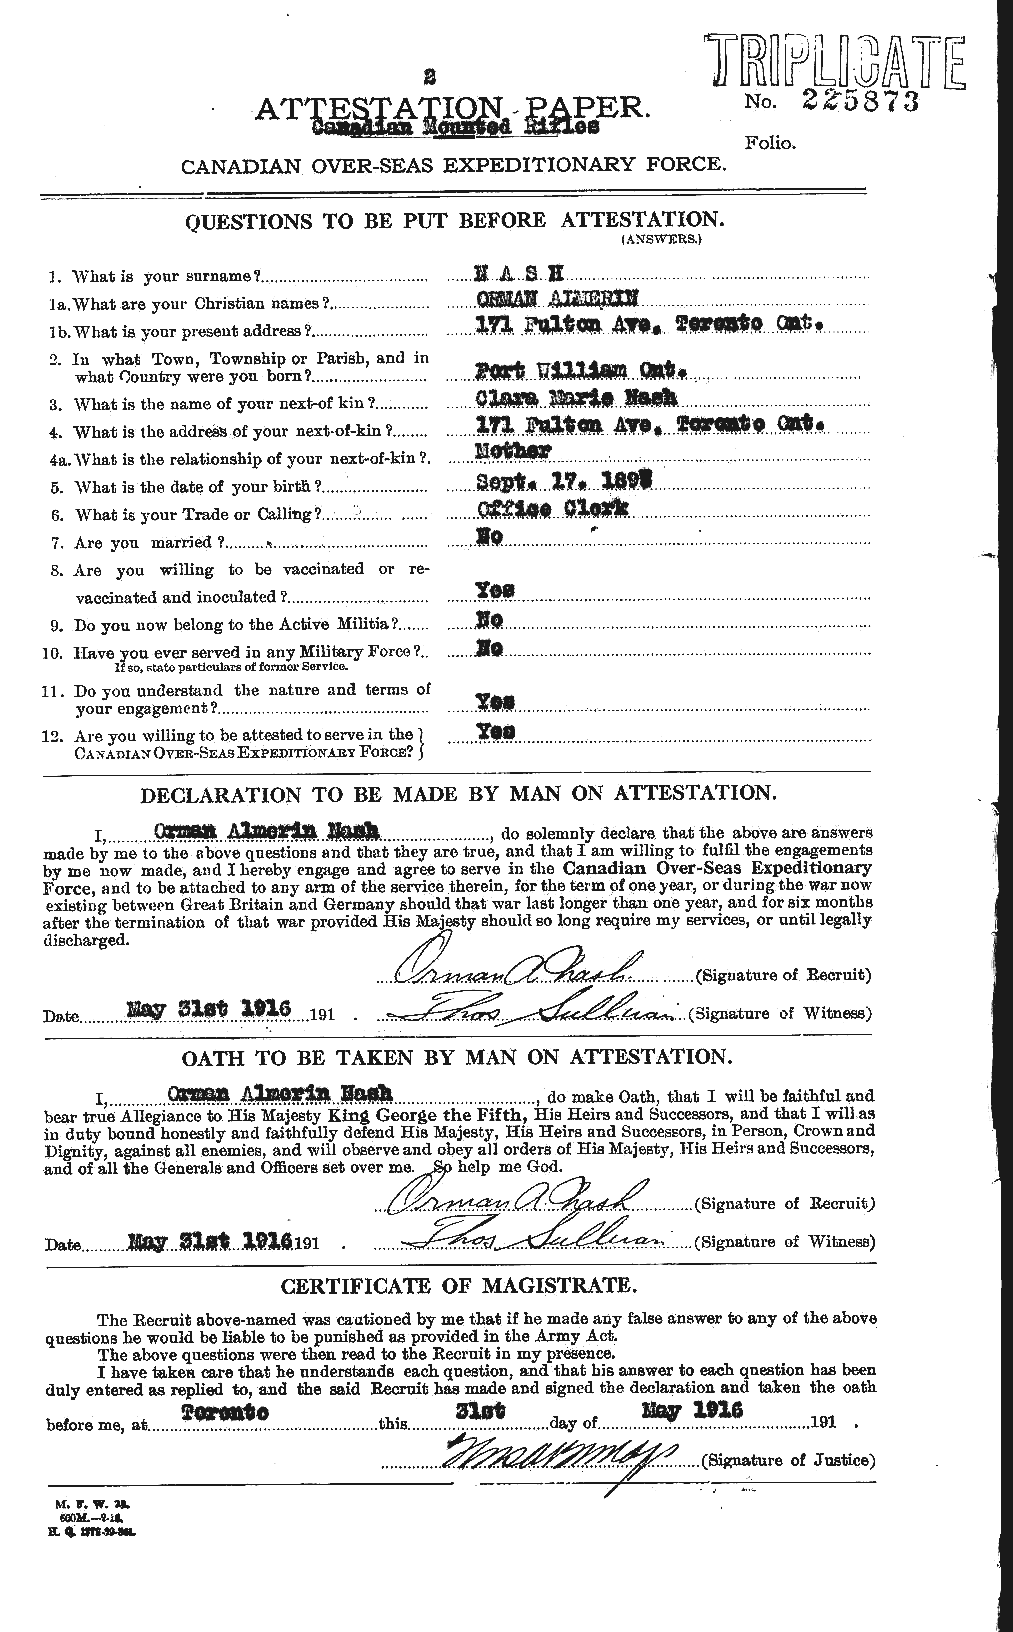 Dossiers du Personnel de la Première Guerre mondiale - CEC 549022a